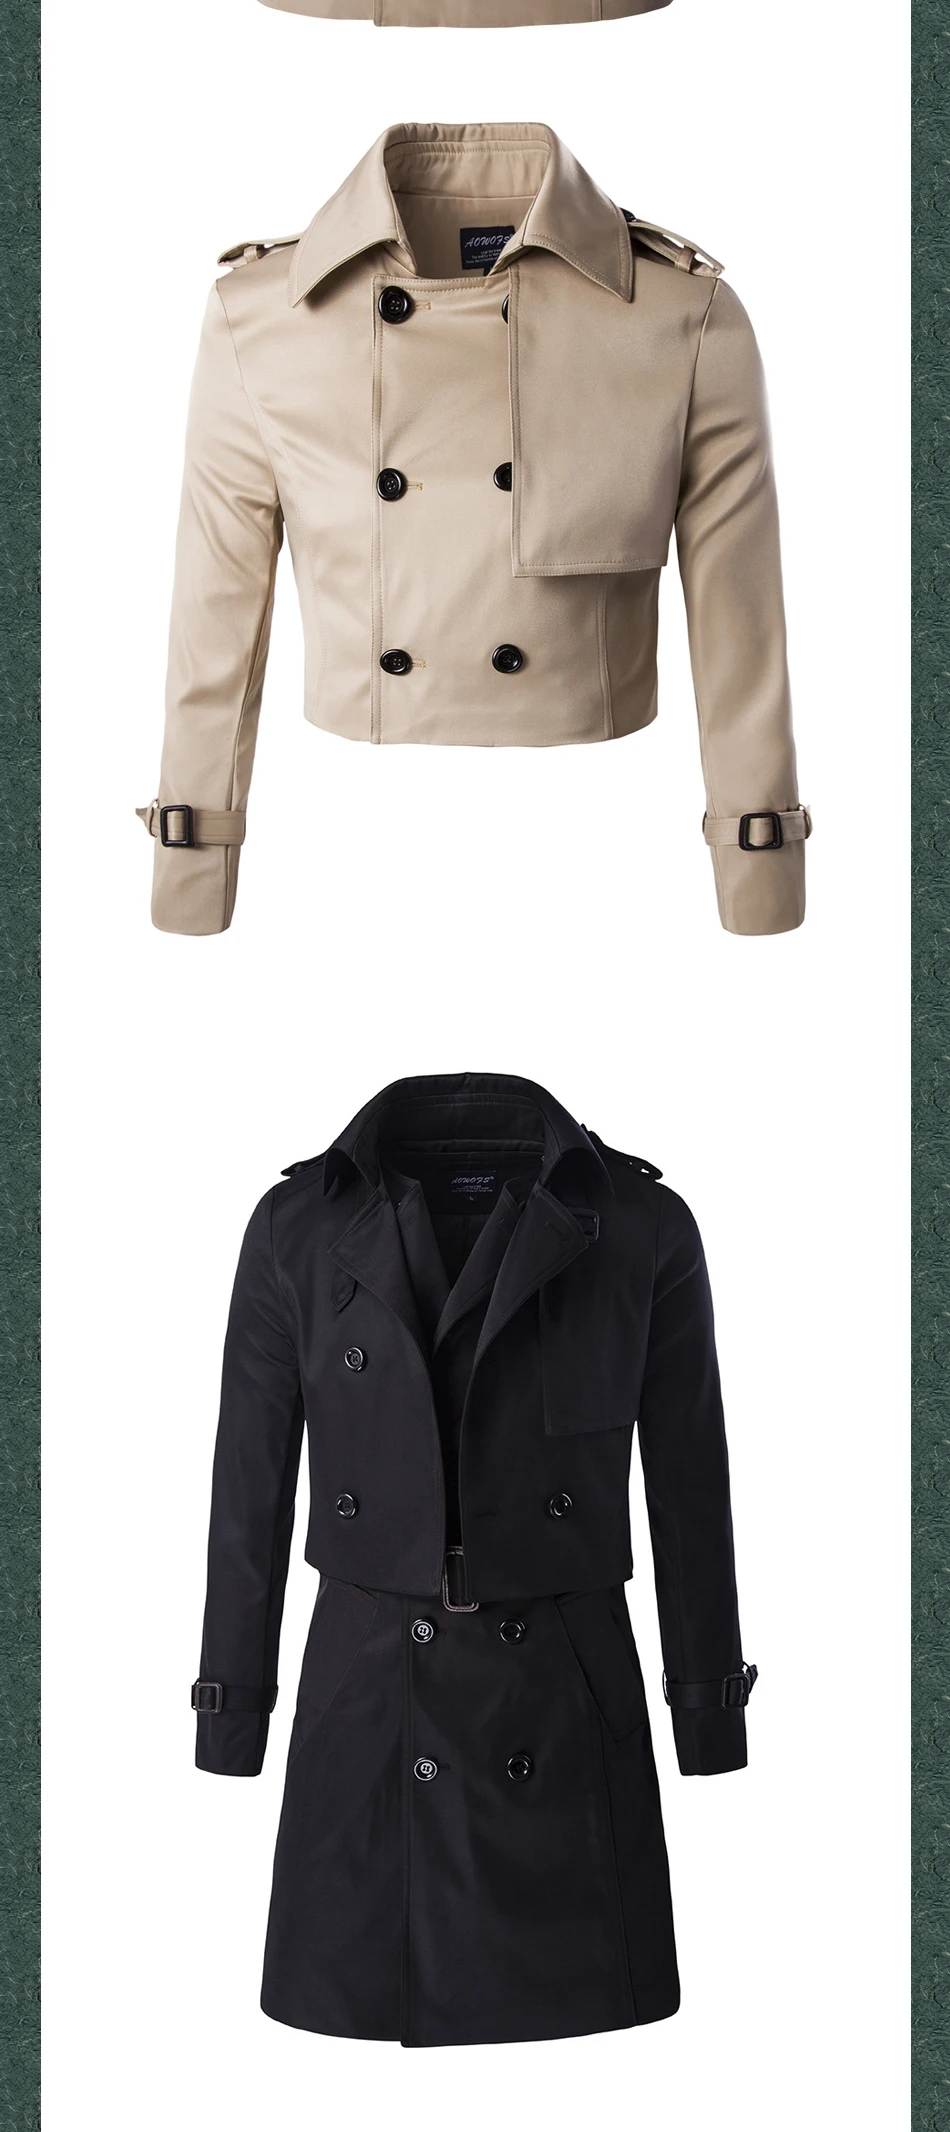 Мода 2019 aowofs эксклюзивный высококлассный Двухсекционный приталенный плащ пальто длинный двубортный джентльмен британский с поясным поясом